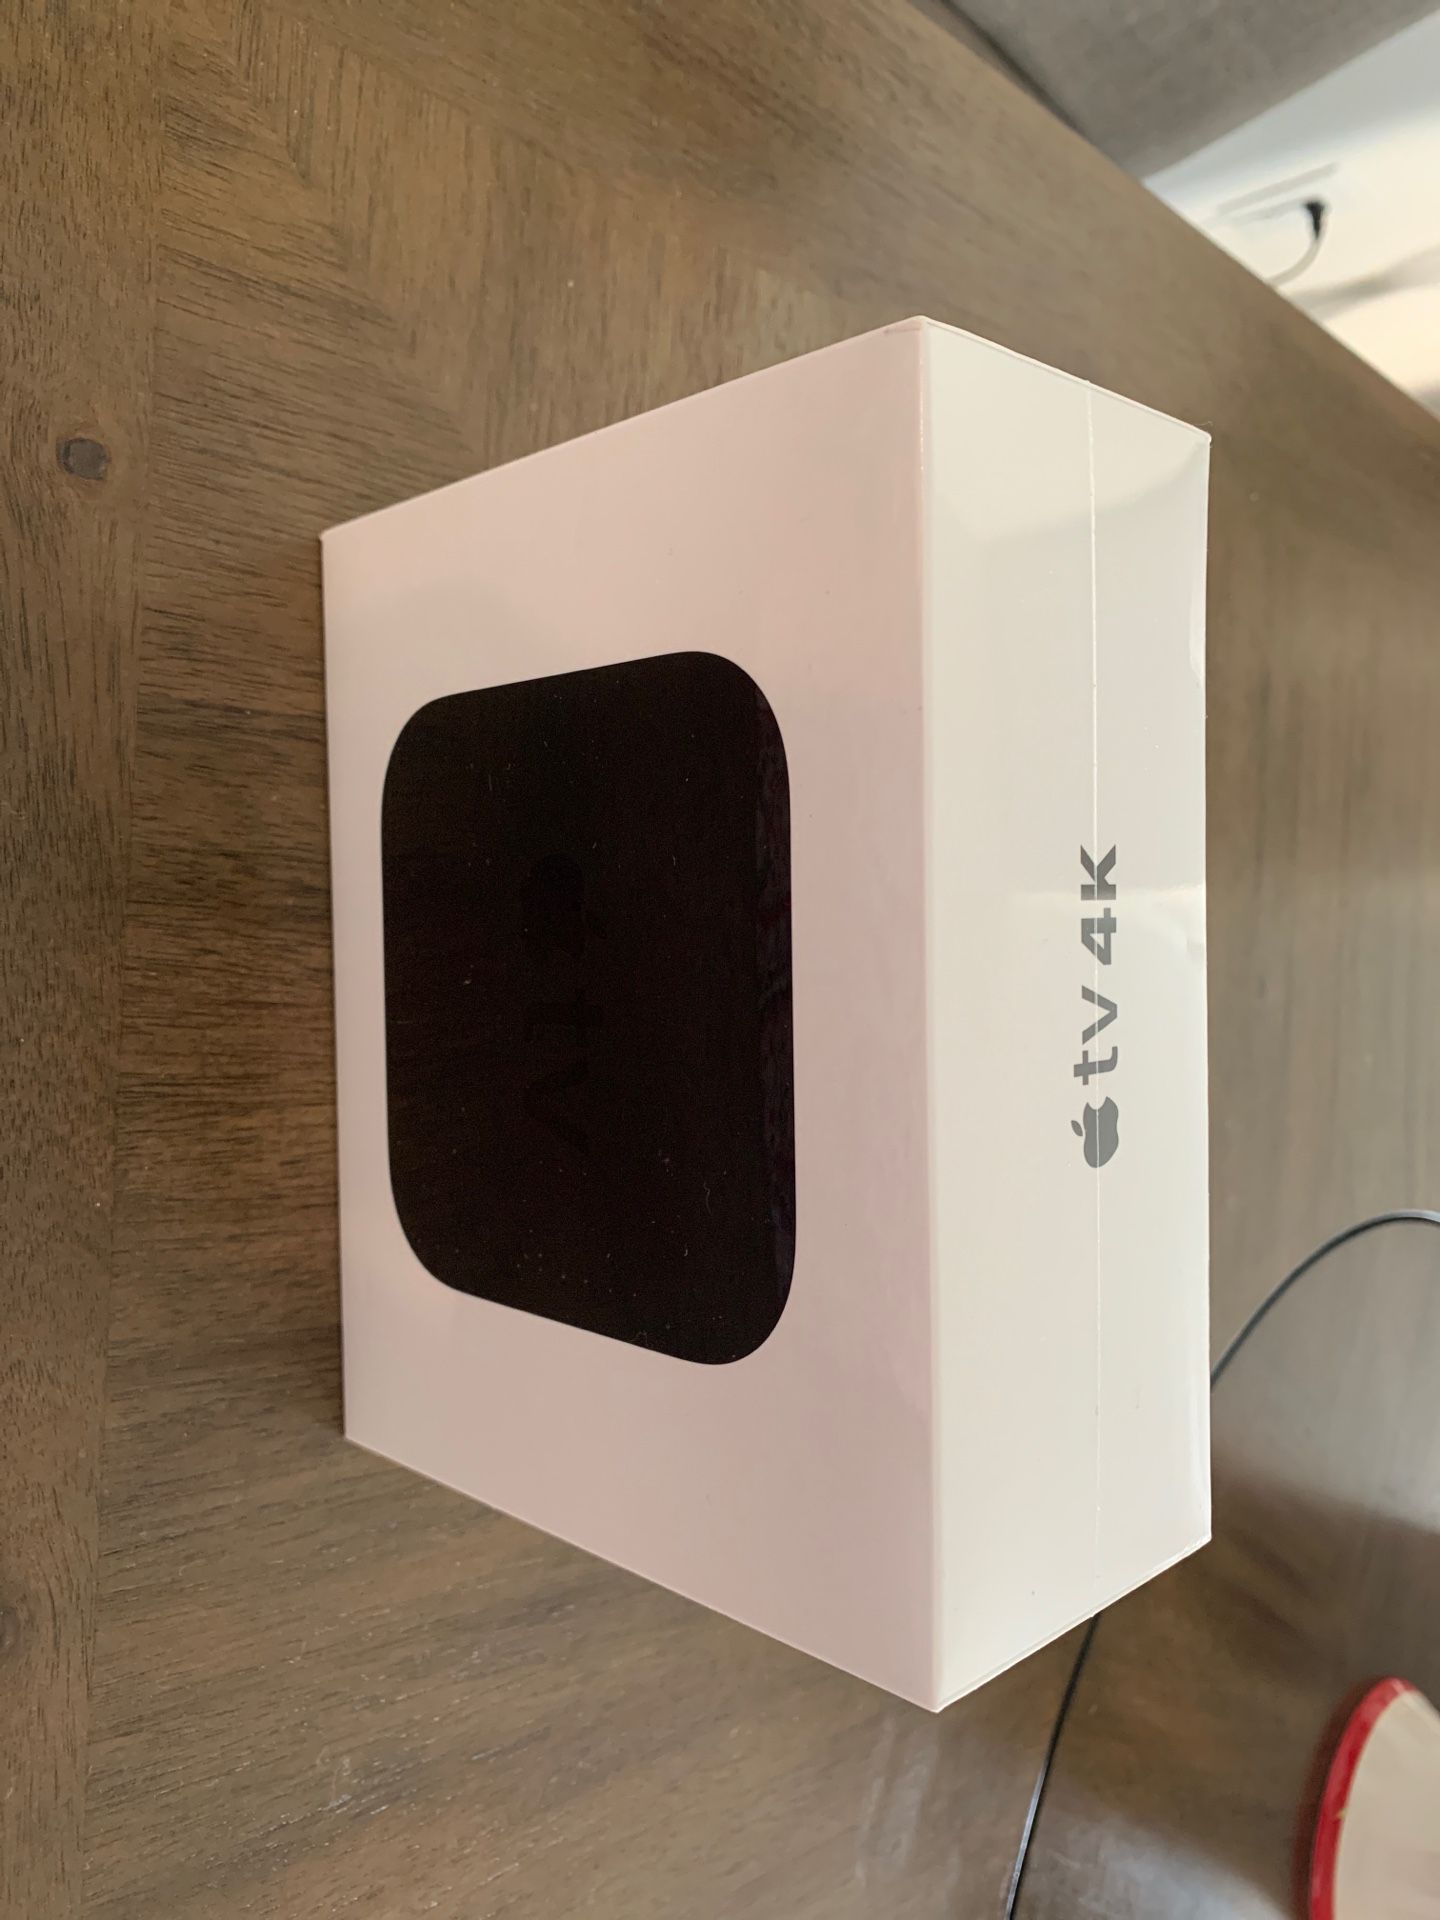 Apple TV 4K new in box